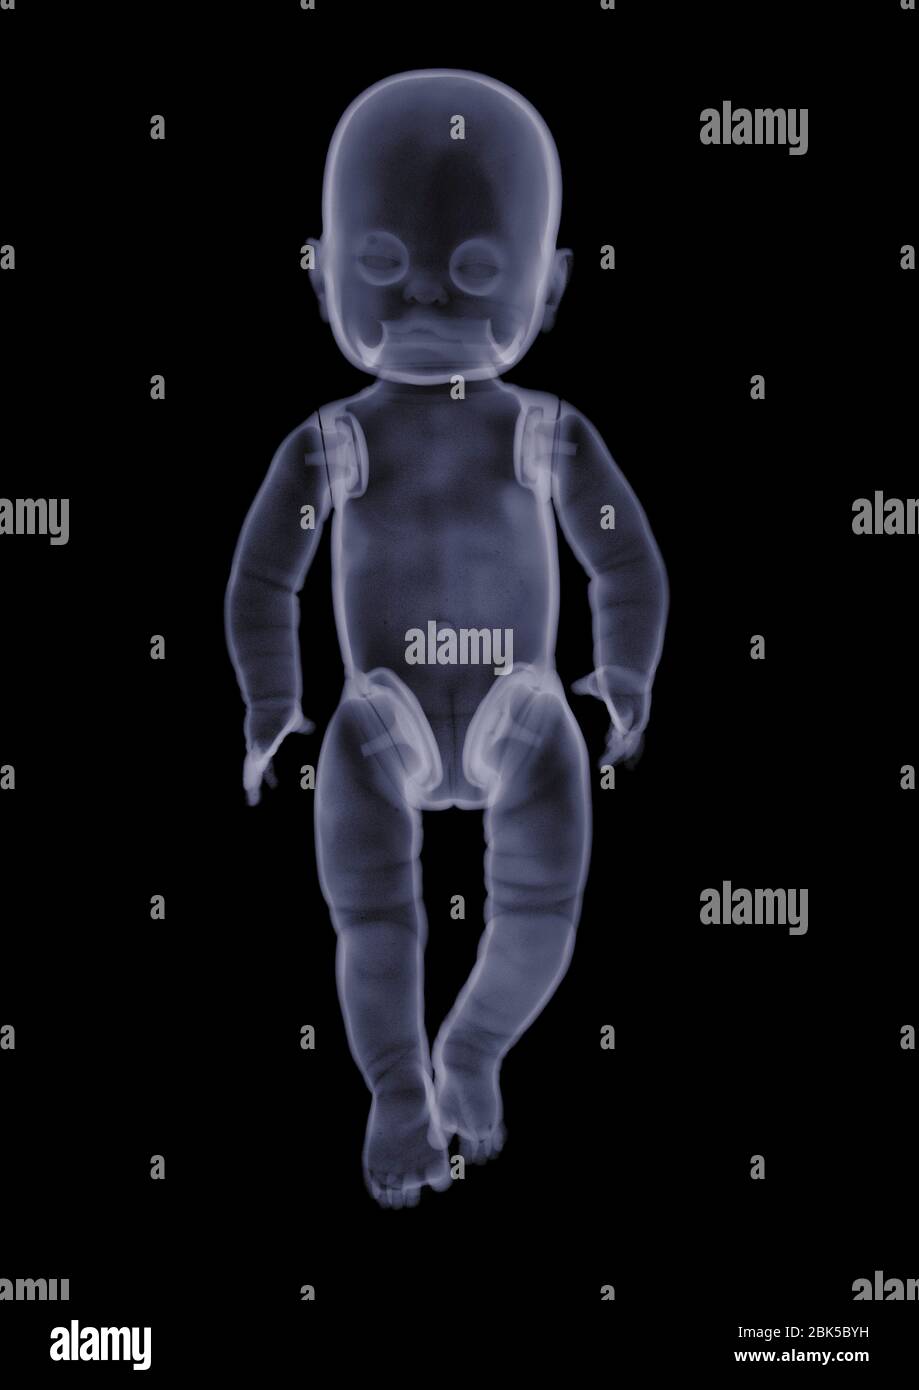 Baby doll, X-ray. Stock Photo